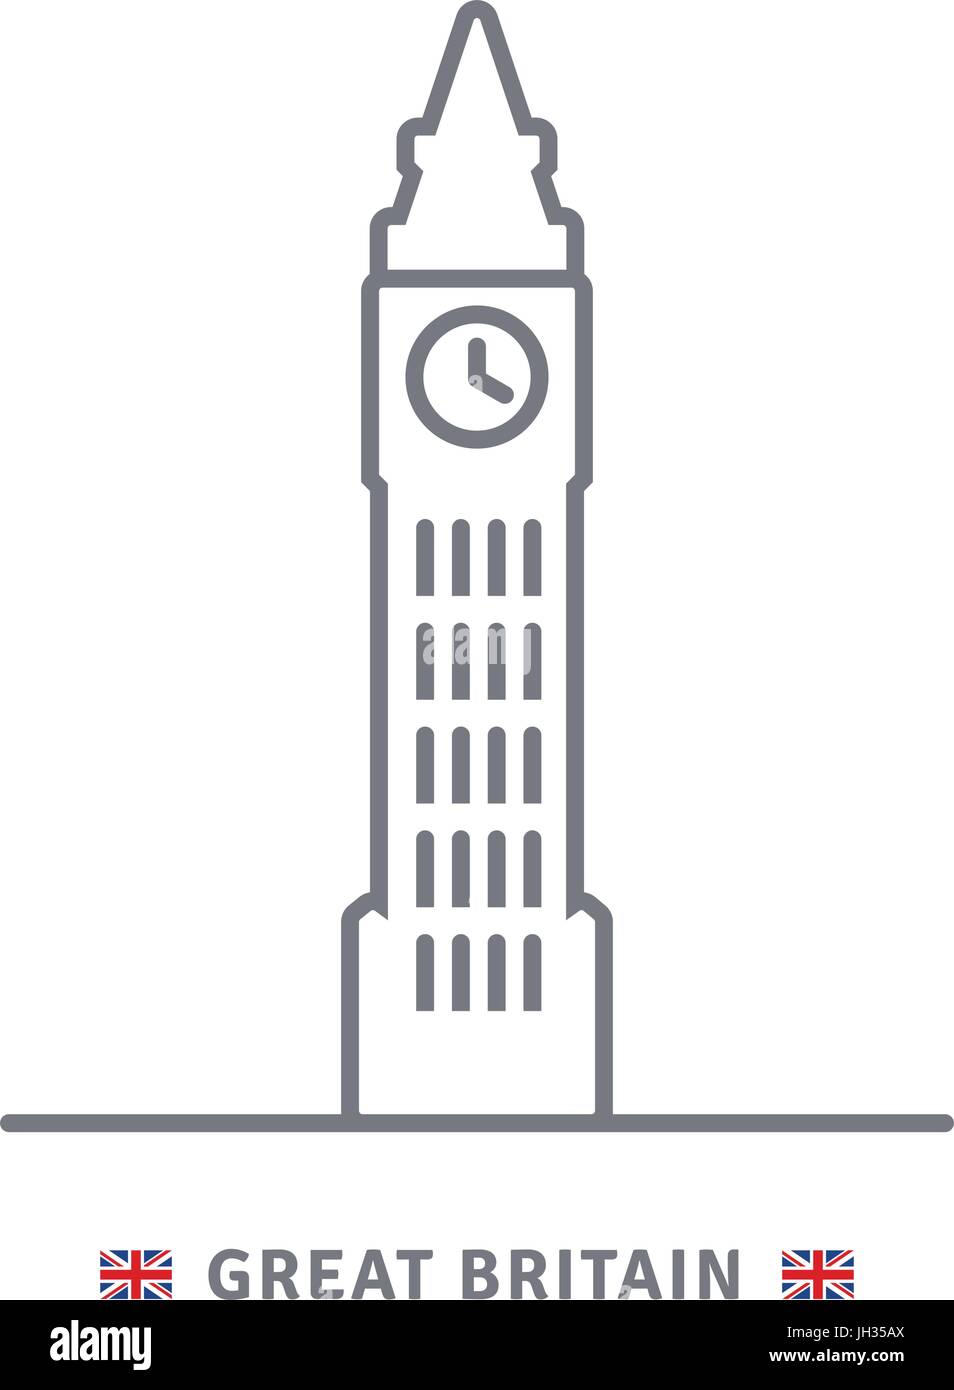 Großbritannien-Linie-Symbol. Big Ben und britische Flagge Vektor-Illustration. Stock Vektor